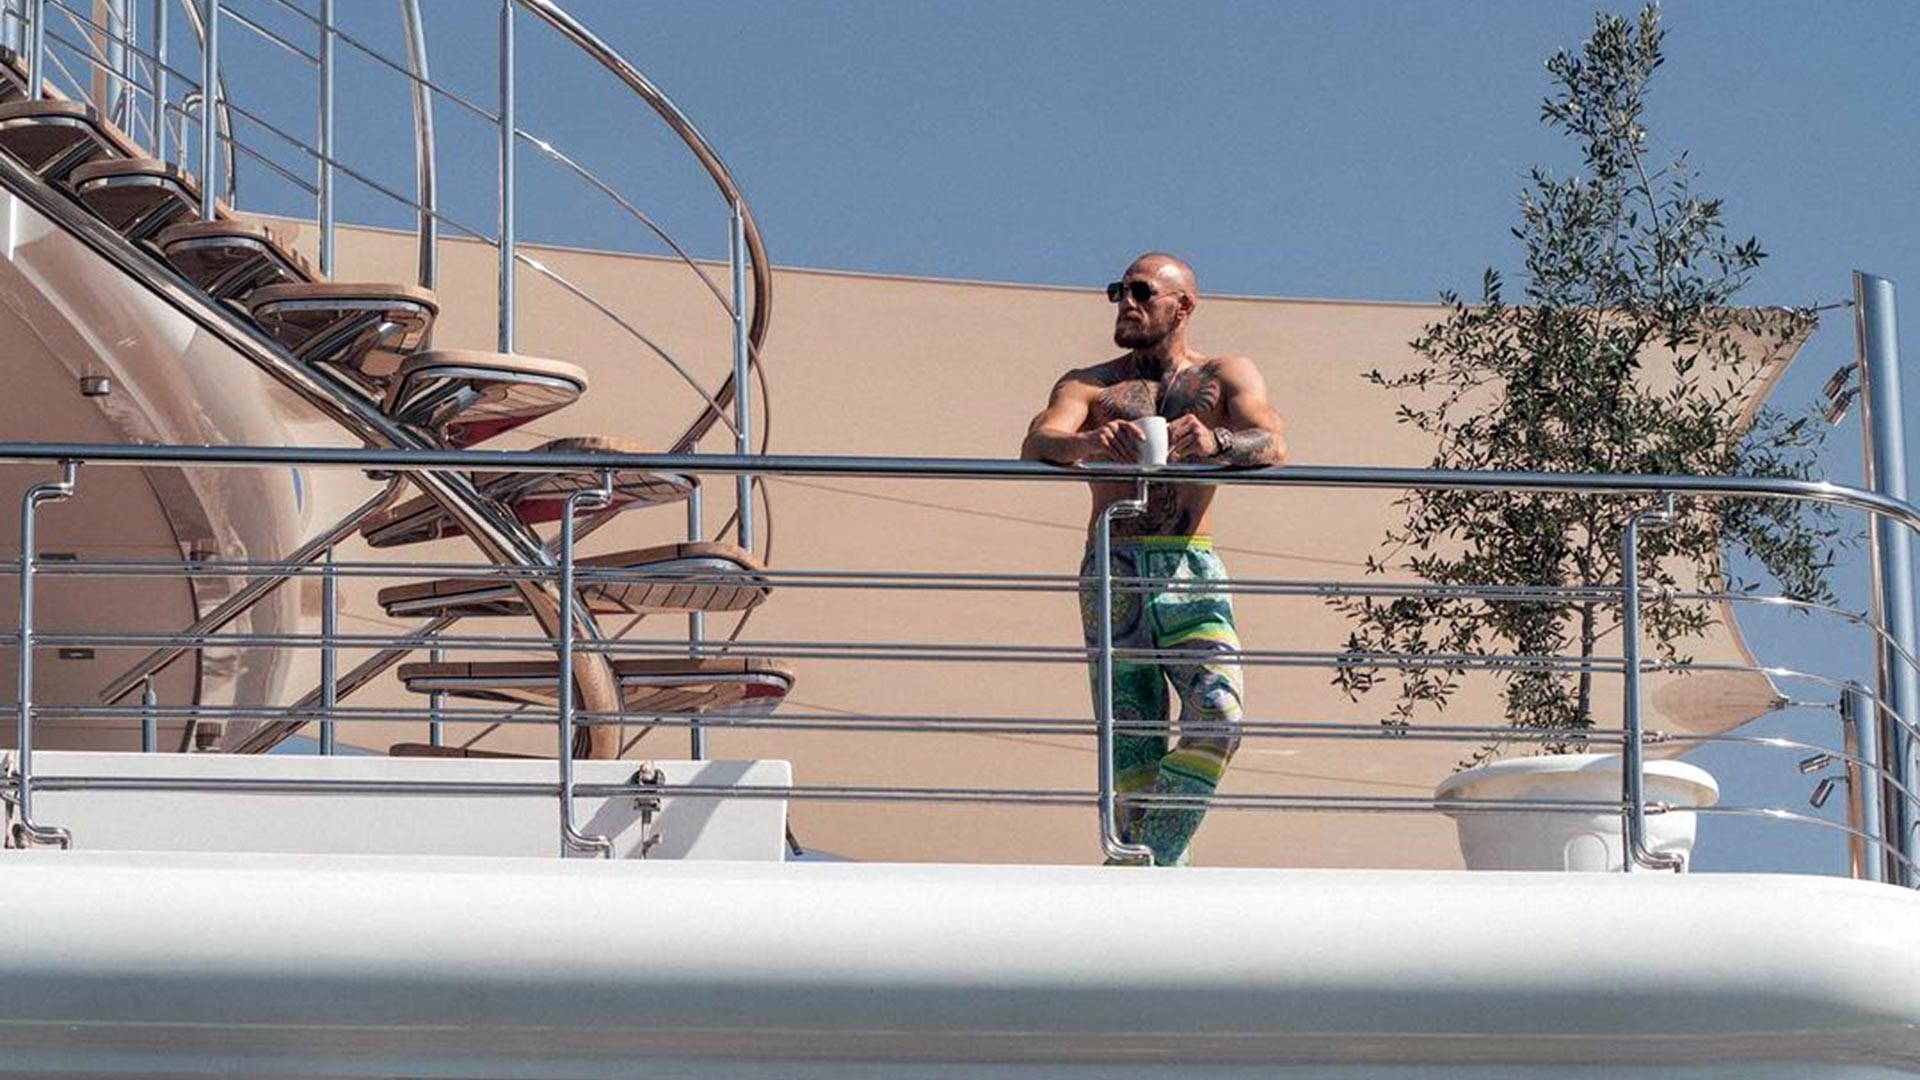 El increíble yate en el que llegó Conor McGregor a Abu Dhabi para luchar contra Dustin Poirier en UFC